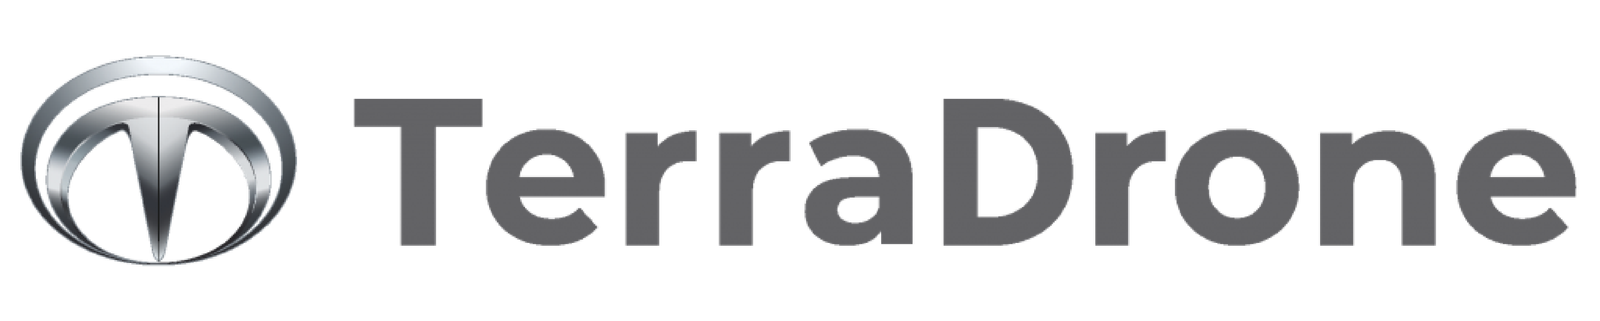 Logo TerraDrone